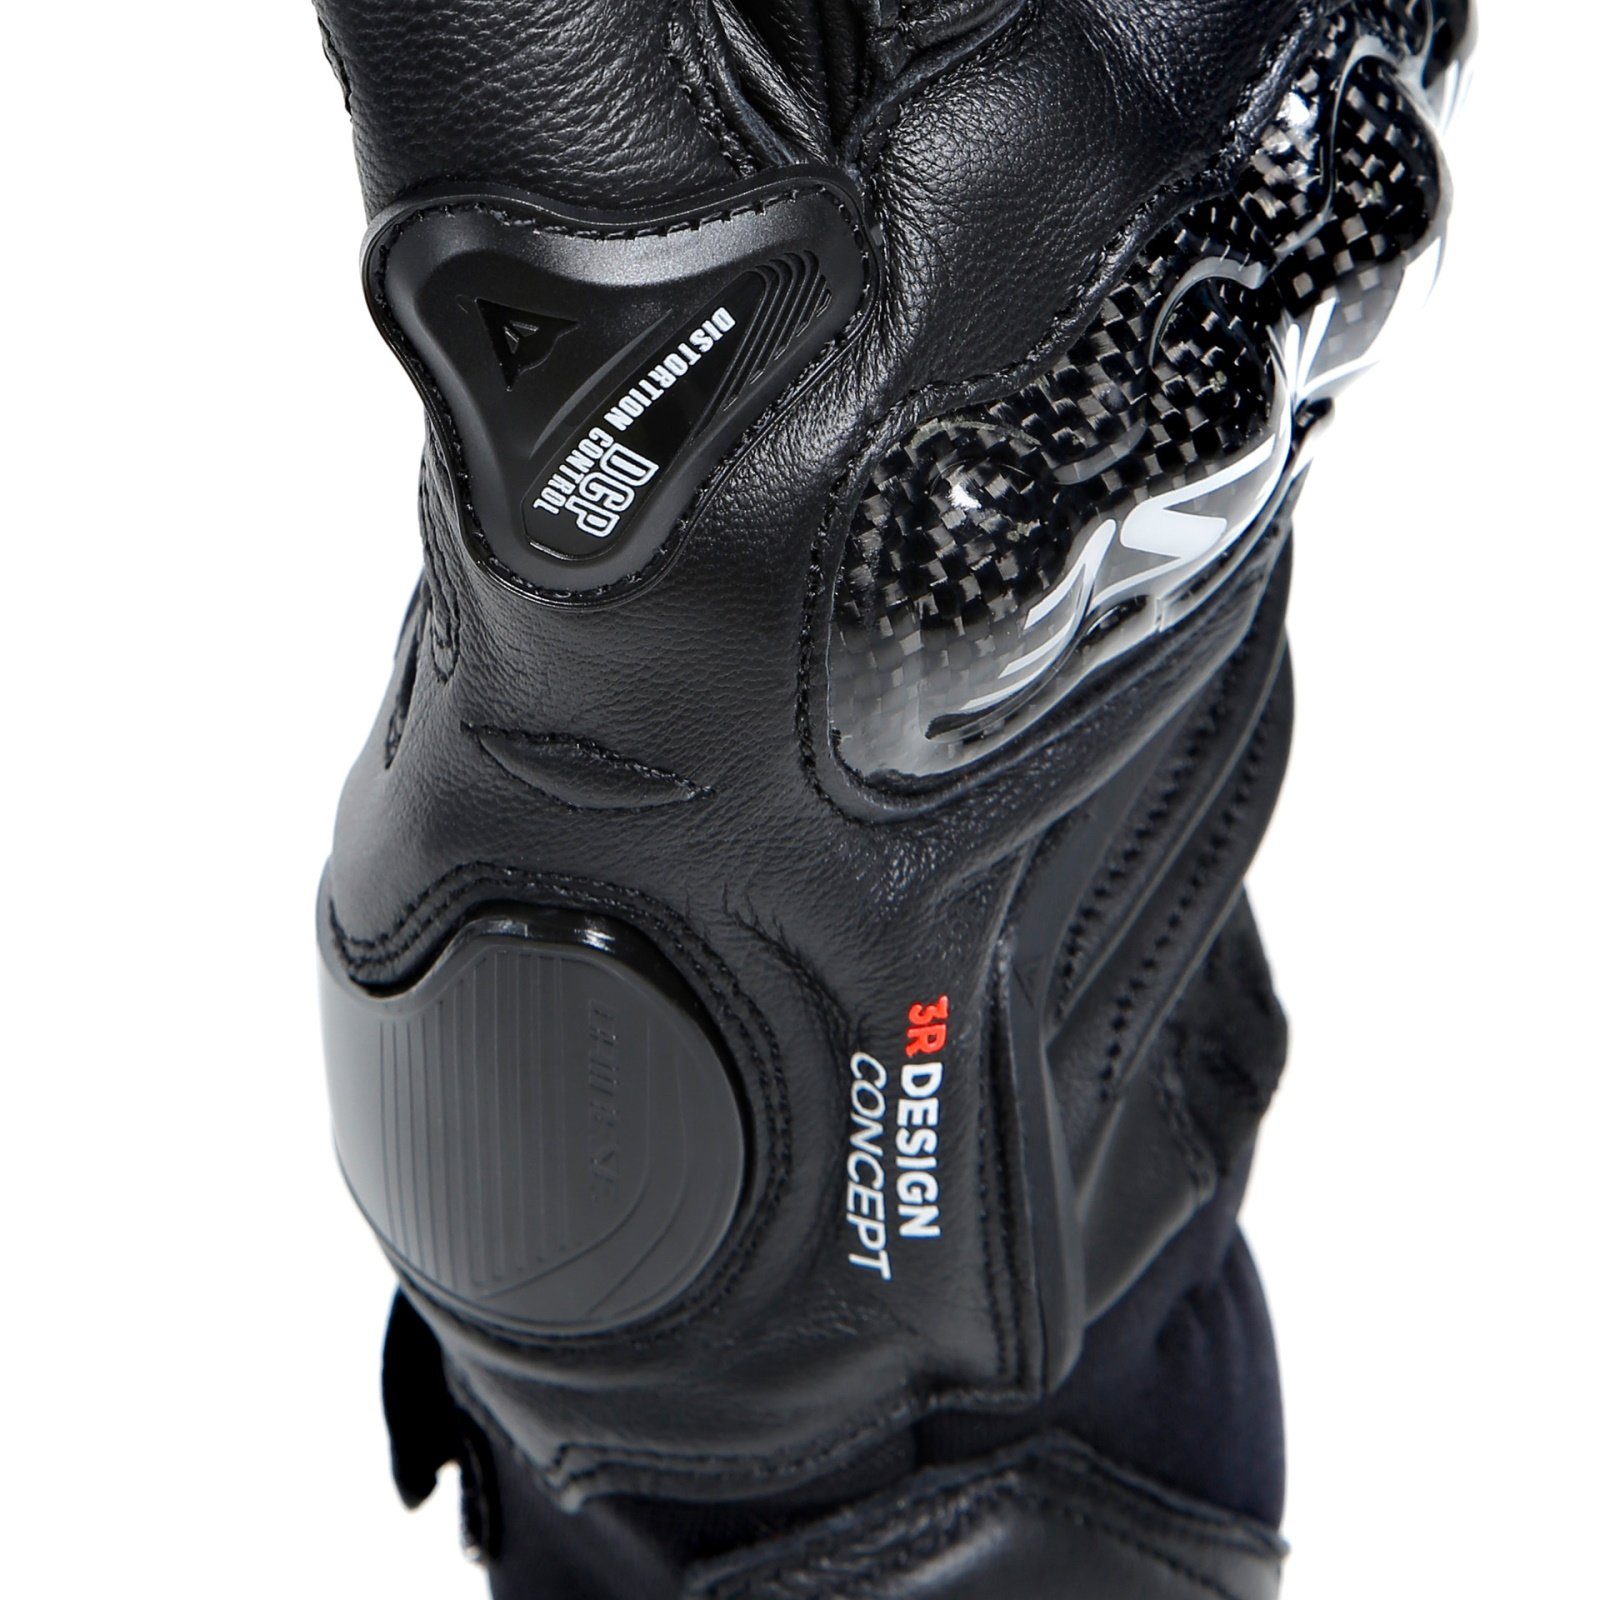 Dainese Motorradhandschuhe Dainese Carbon schwarz Kurz schwarz Sporthandschuhe Black 4 